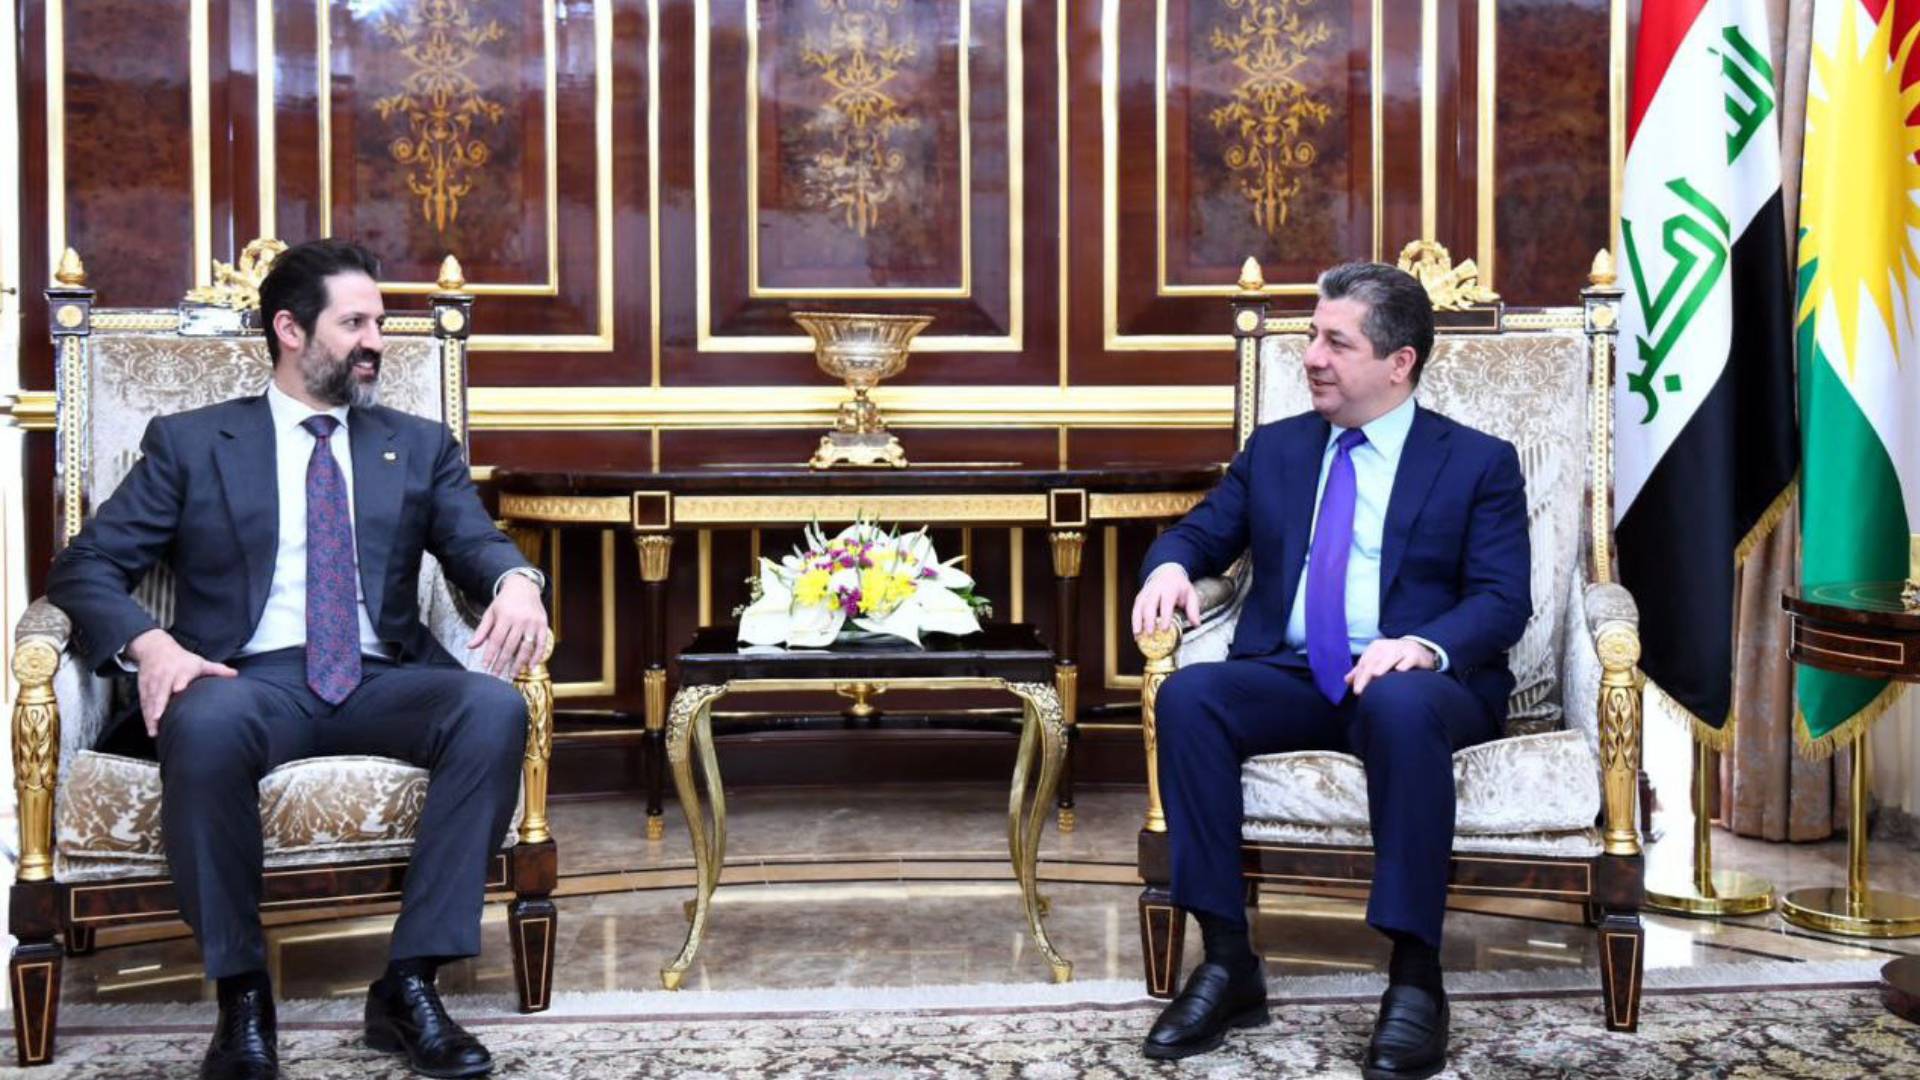  PM Masrour Barzani and Deputy PM Qubad Talabani.